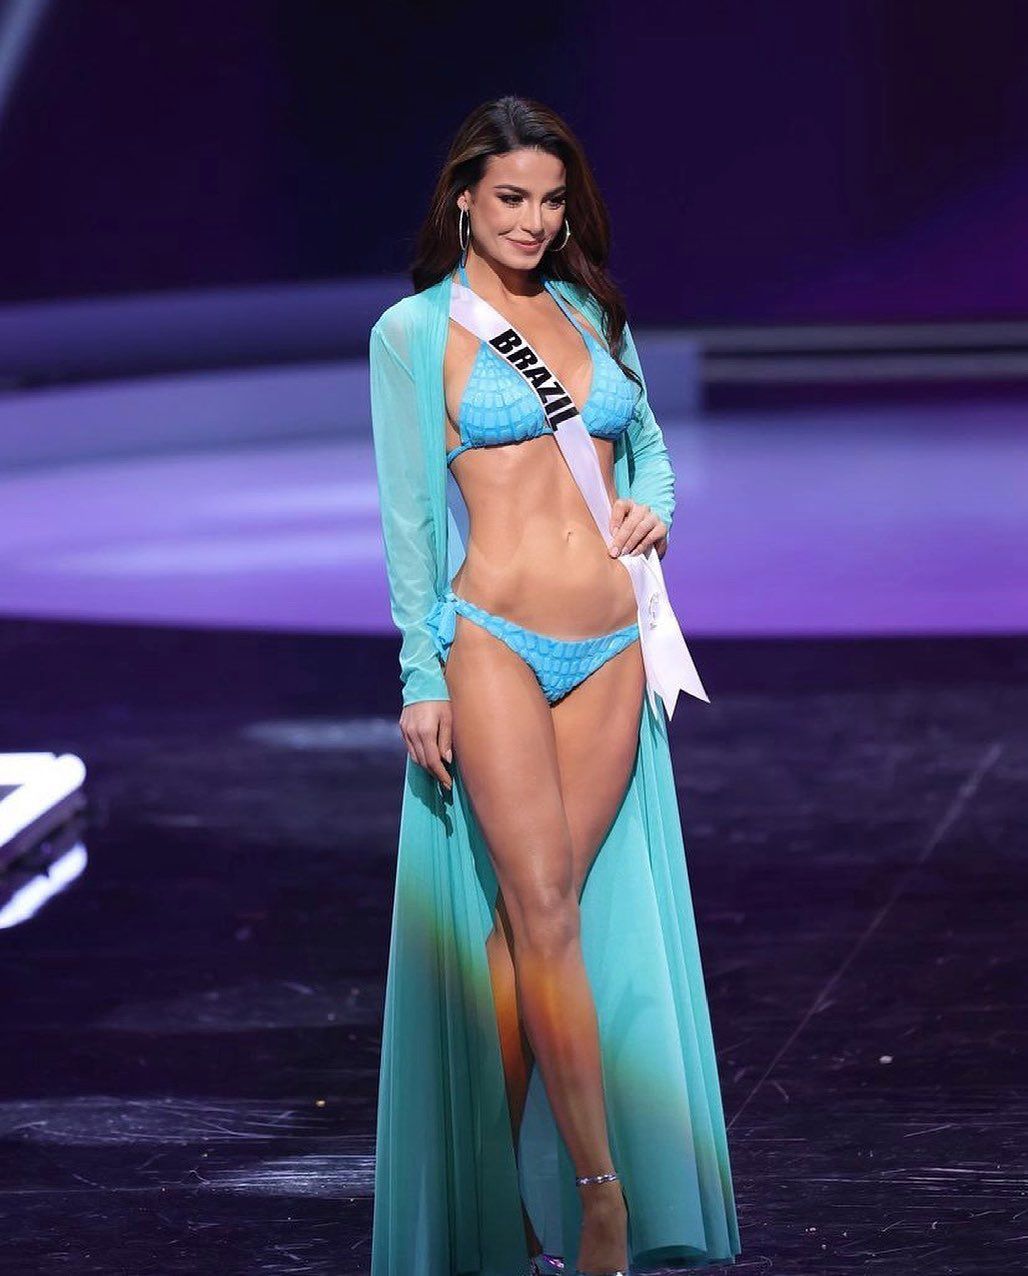 A concorrente brasileira foi eliminada na primeira fase do concurso de Miss  Universo. ao contrario da portuguesa que ficou nas 16 primeiras. A beleza  feminina decaiu no Brasil, ou a fama é